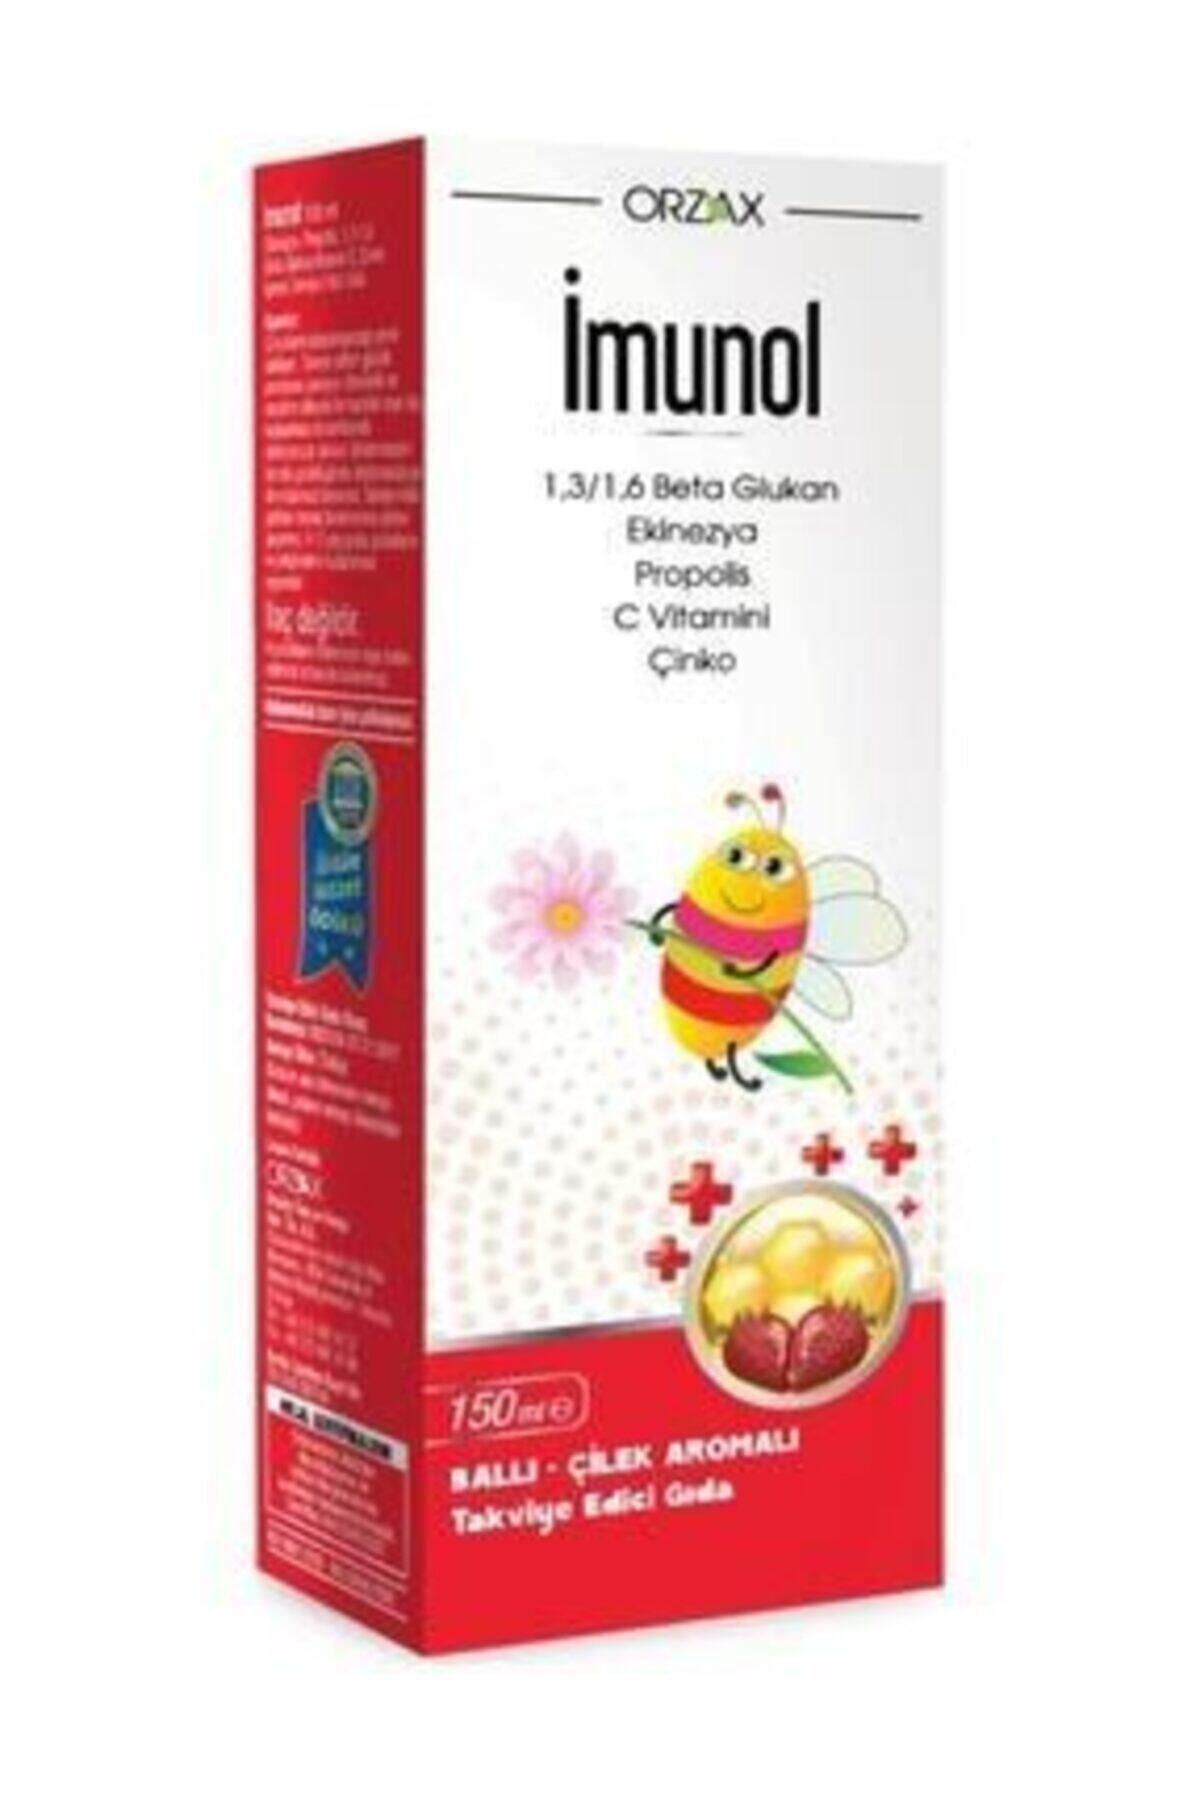 İMUNOL Imunol Imunol Şurup 150 ml